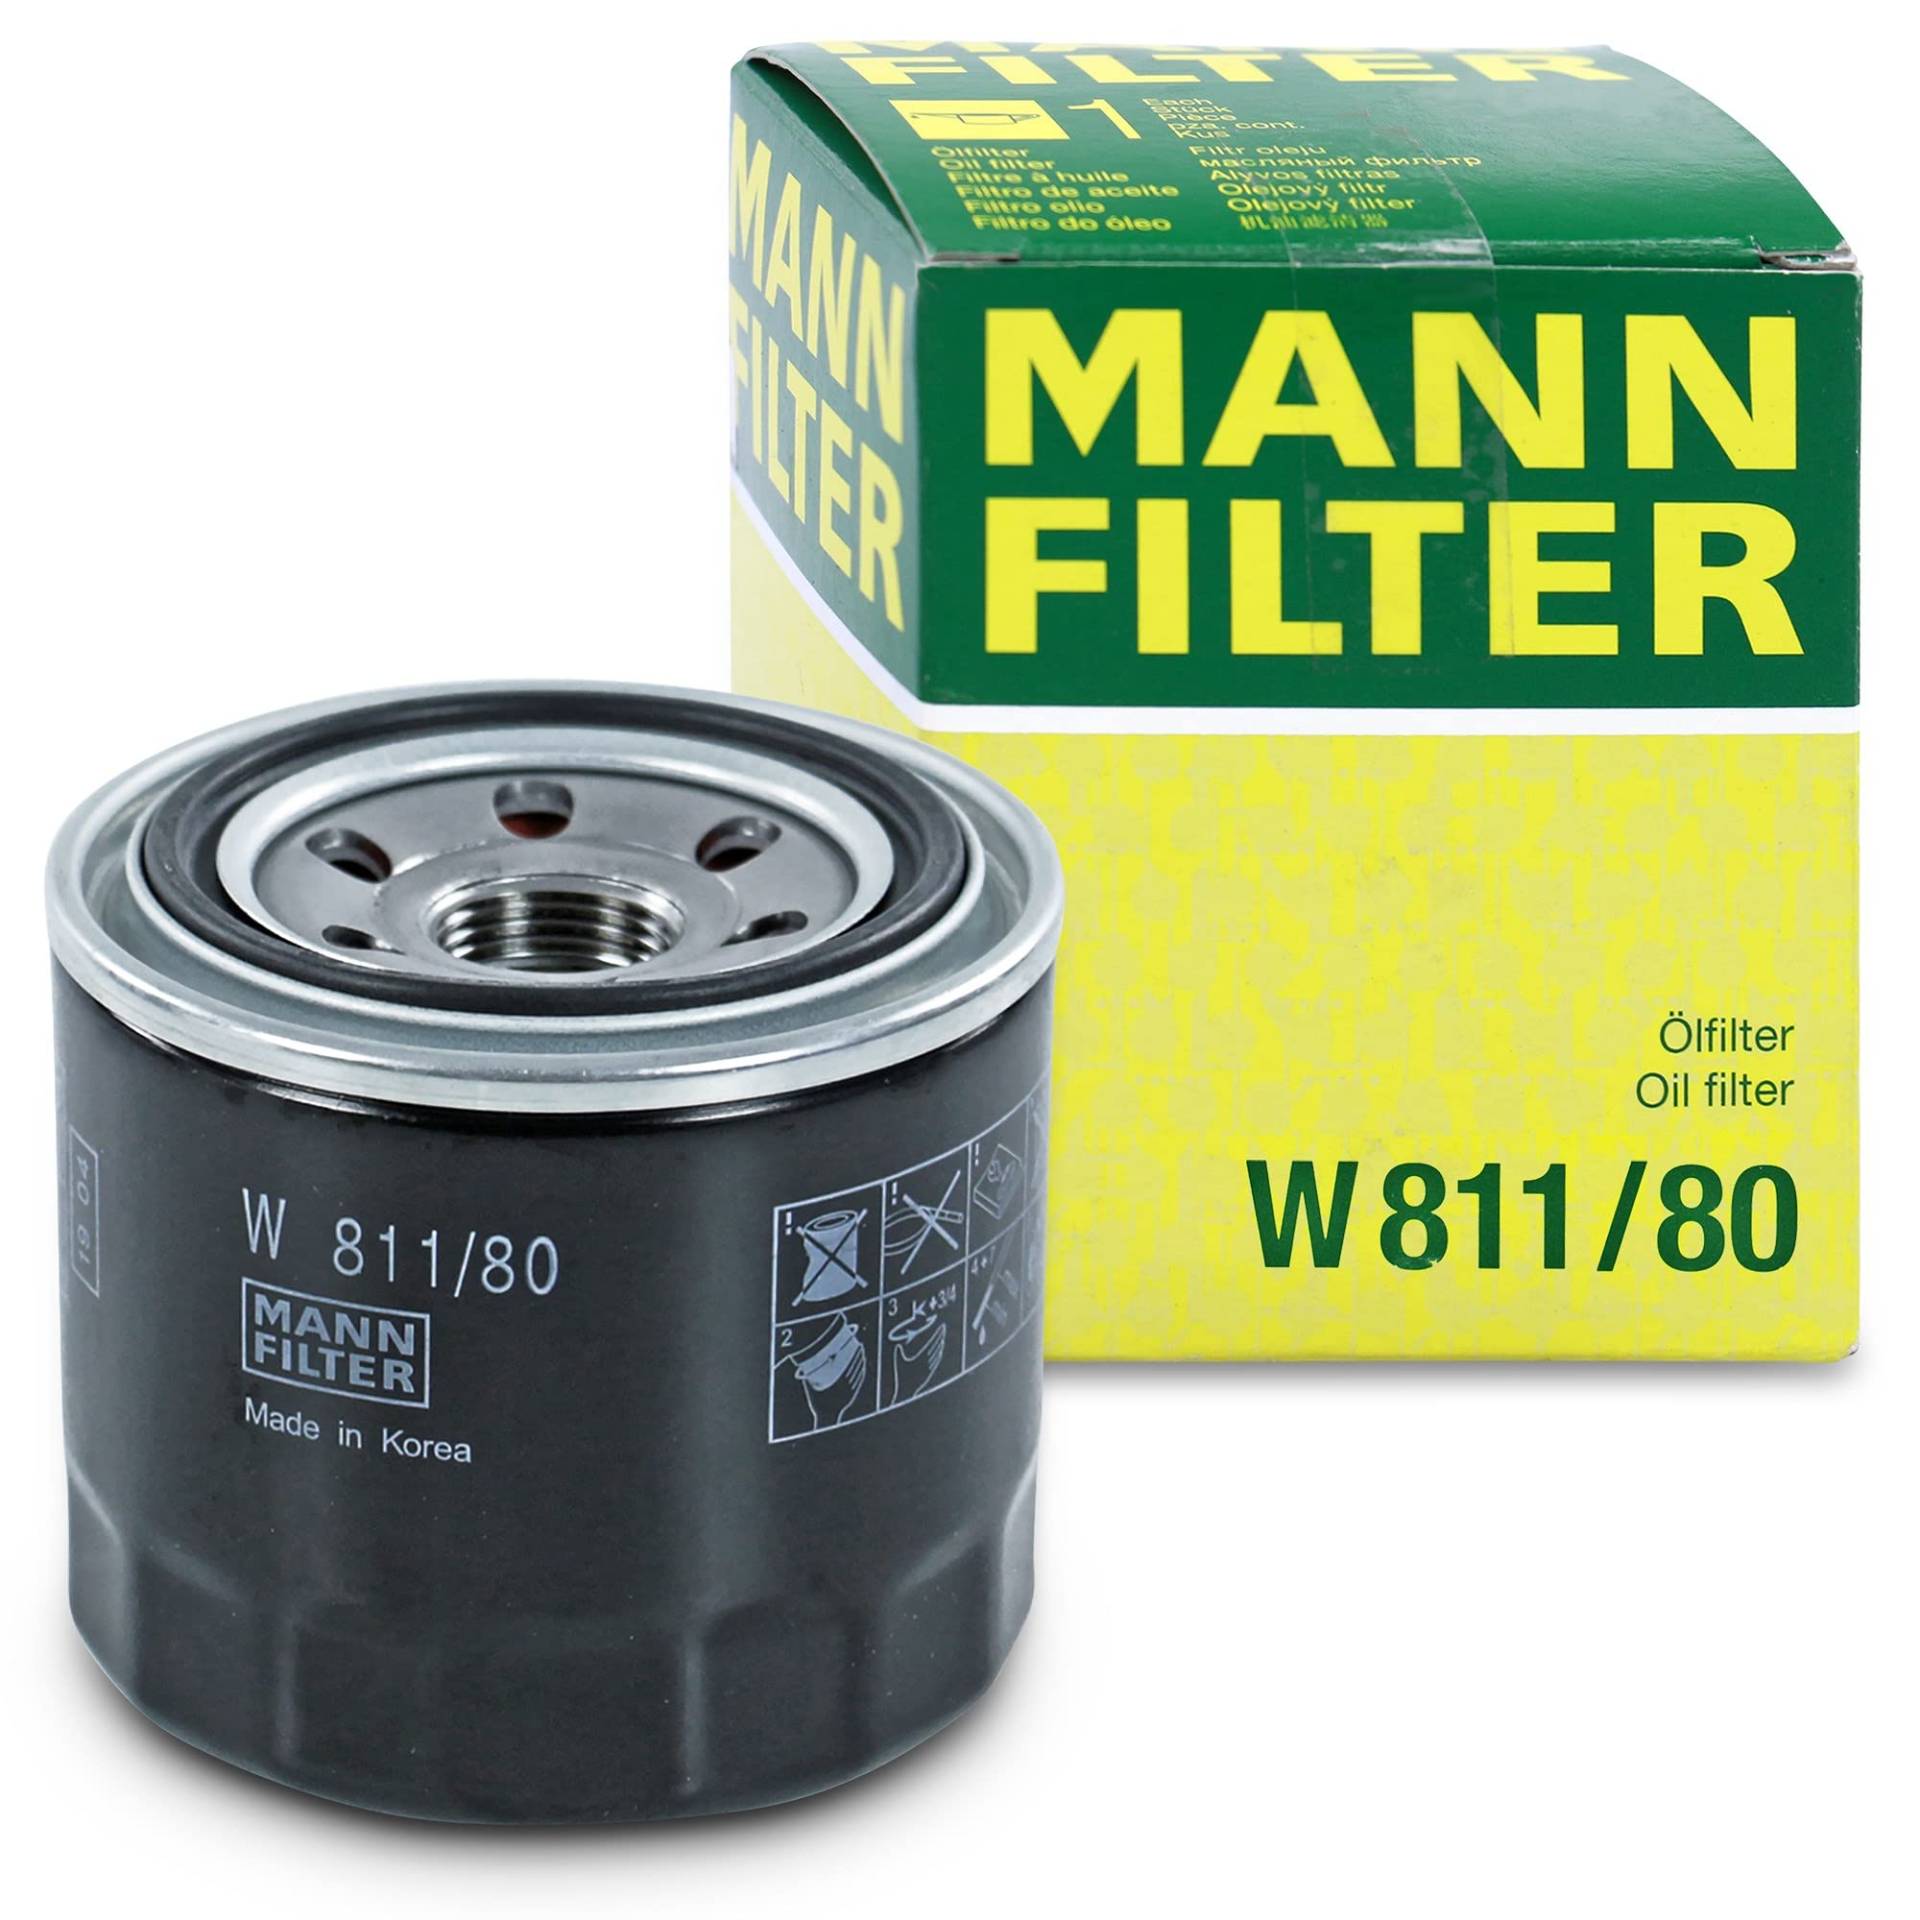 MANN-FILTER W 811/80 Ölfilter – Für PKW und Nutzfahrzeuge von MANN-FILTER